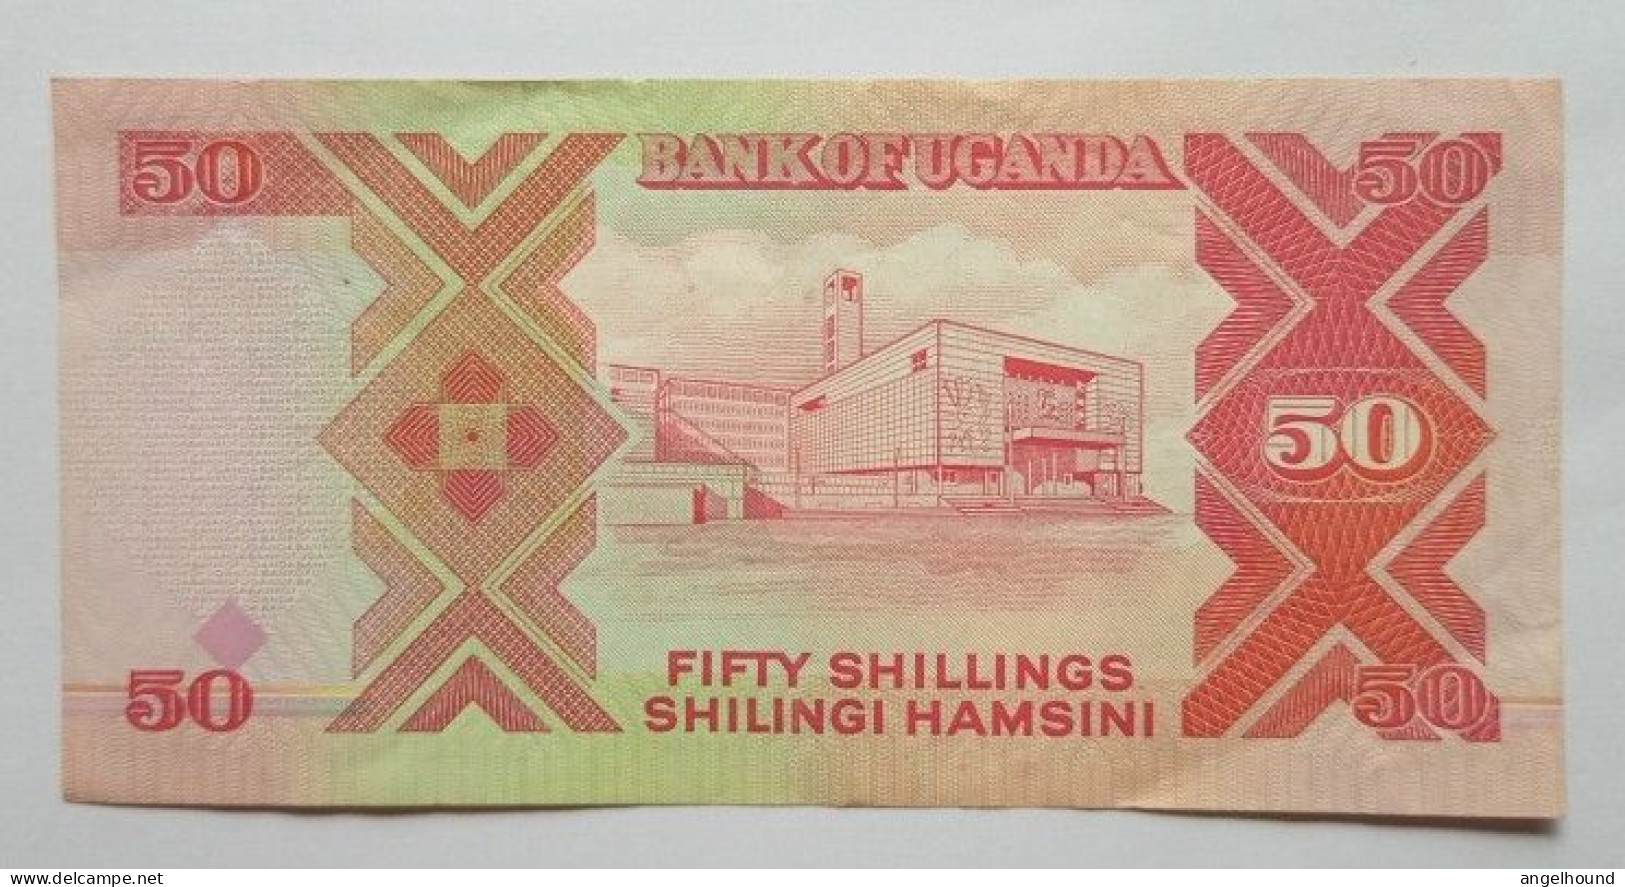 Uganda 50 Shillings 1998 - Uganda